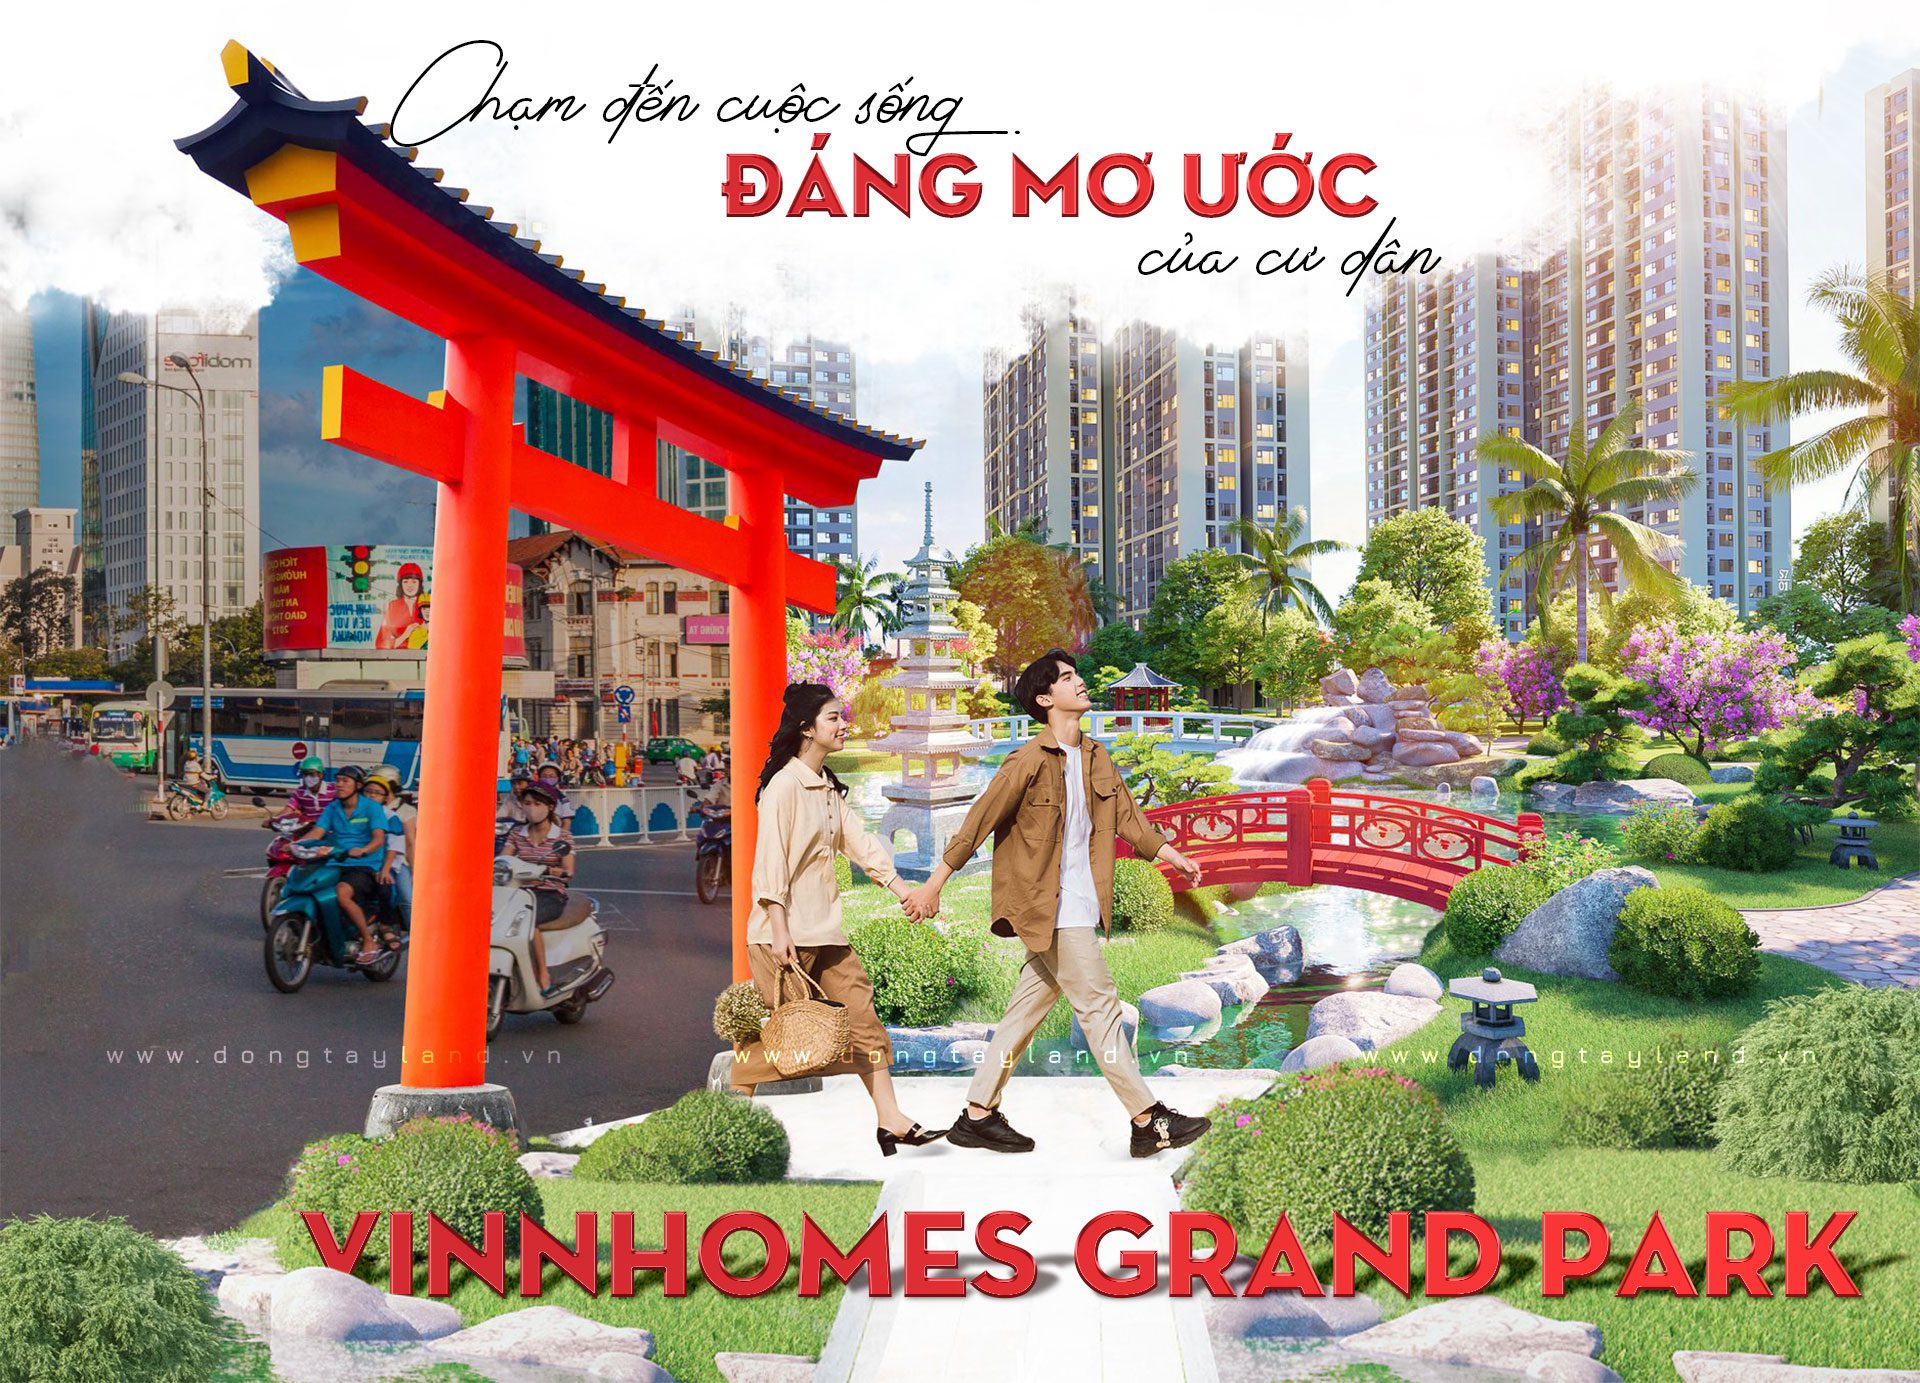 Vinhomes Grand Park Quận 9 - Thành phố công viên hiện đại bậc nhất Đông Sài Gòn — Đông Tây Land